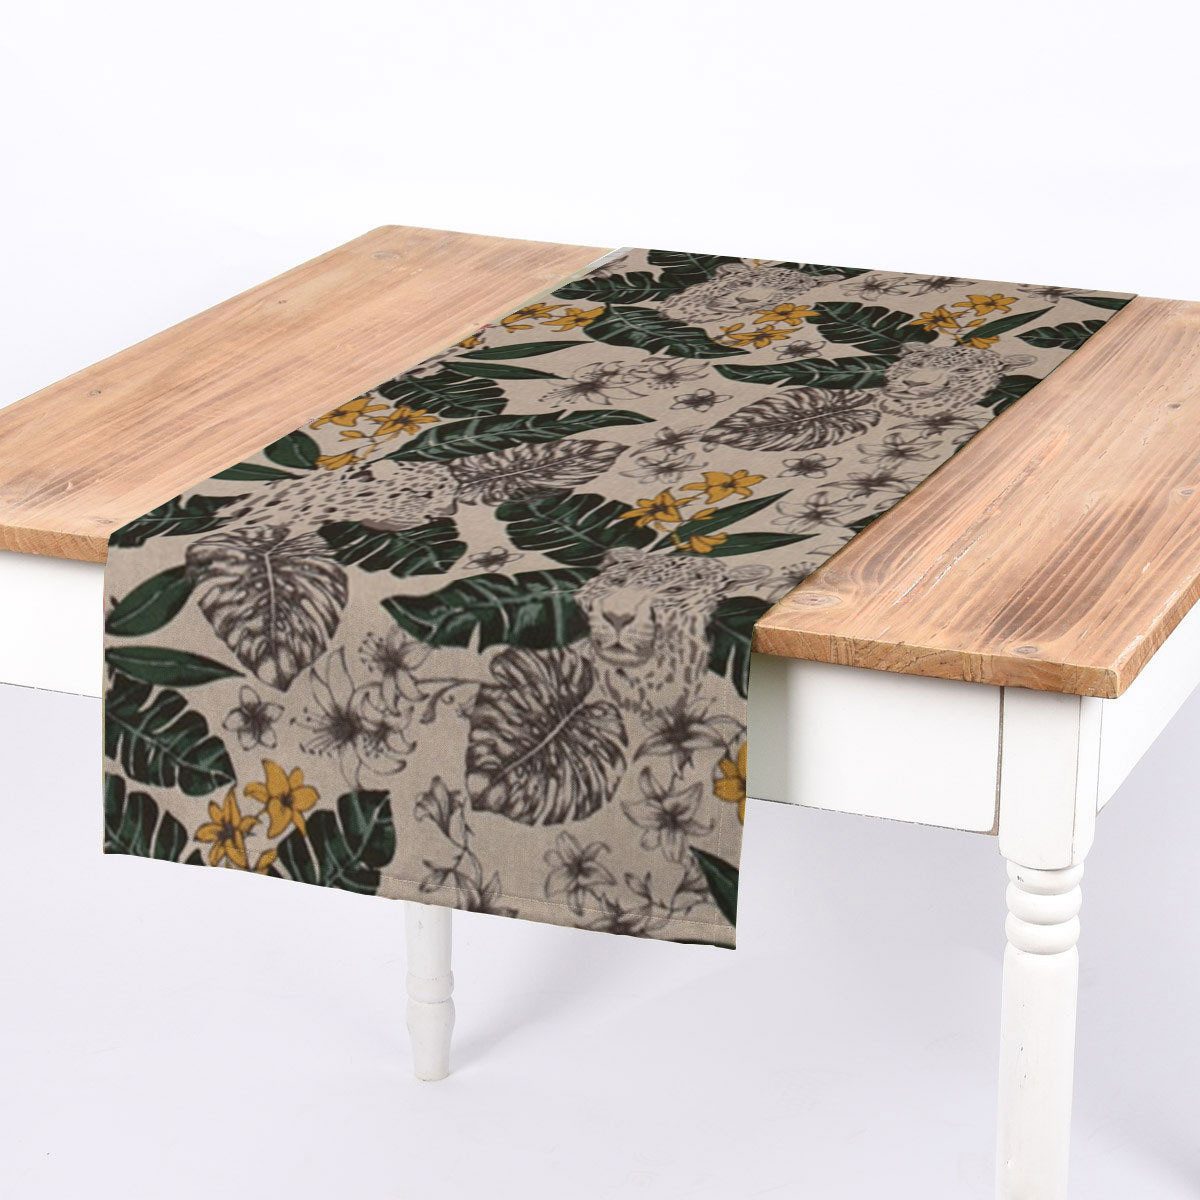 SCHÖNER LEBEN. Tischläufer SCHÖNER LEBEN. Tischläufer Blätter Leopard Dschungel natur grün gel, handmade